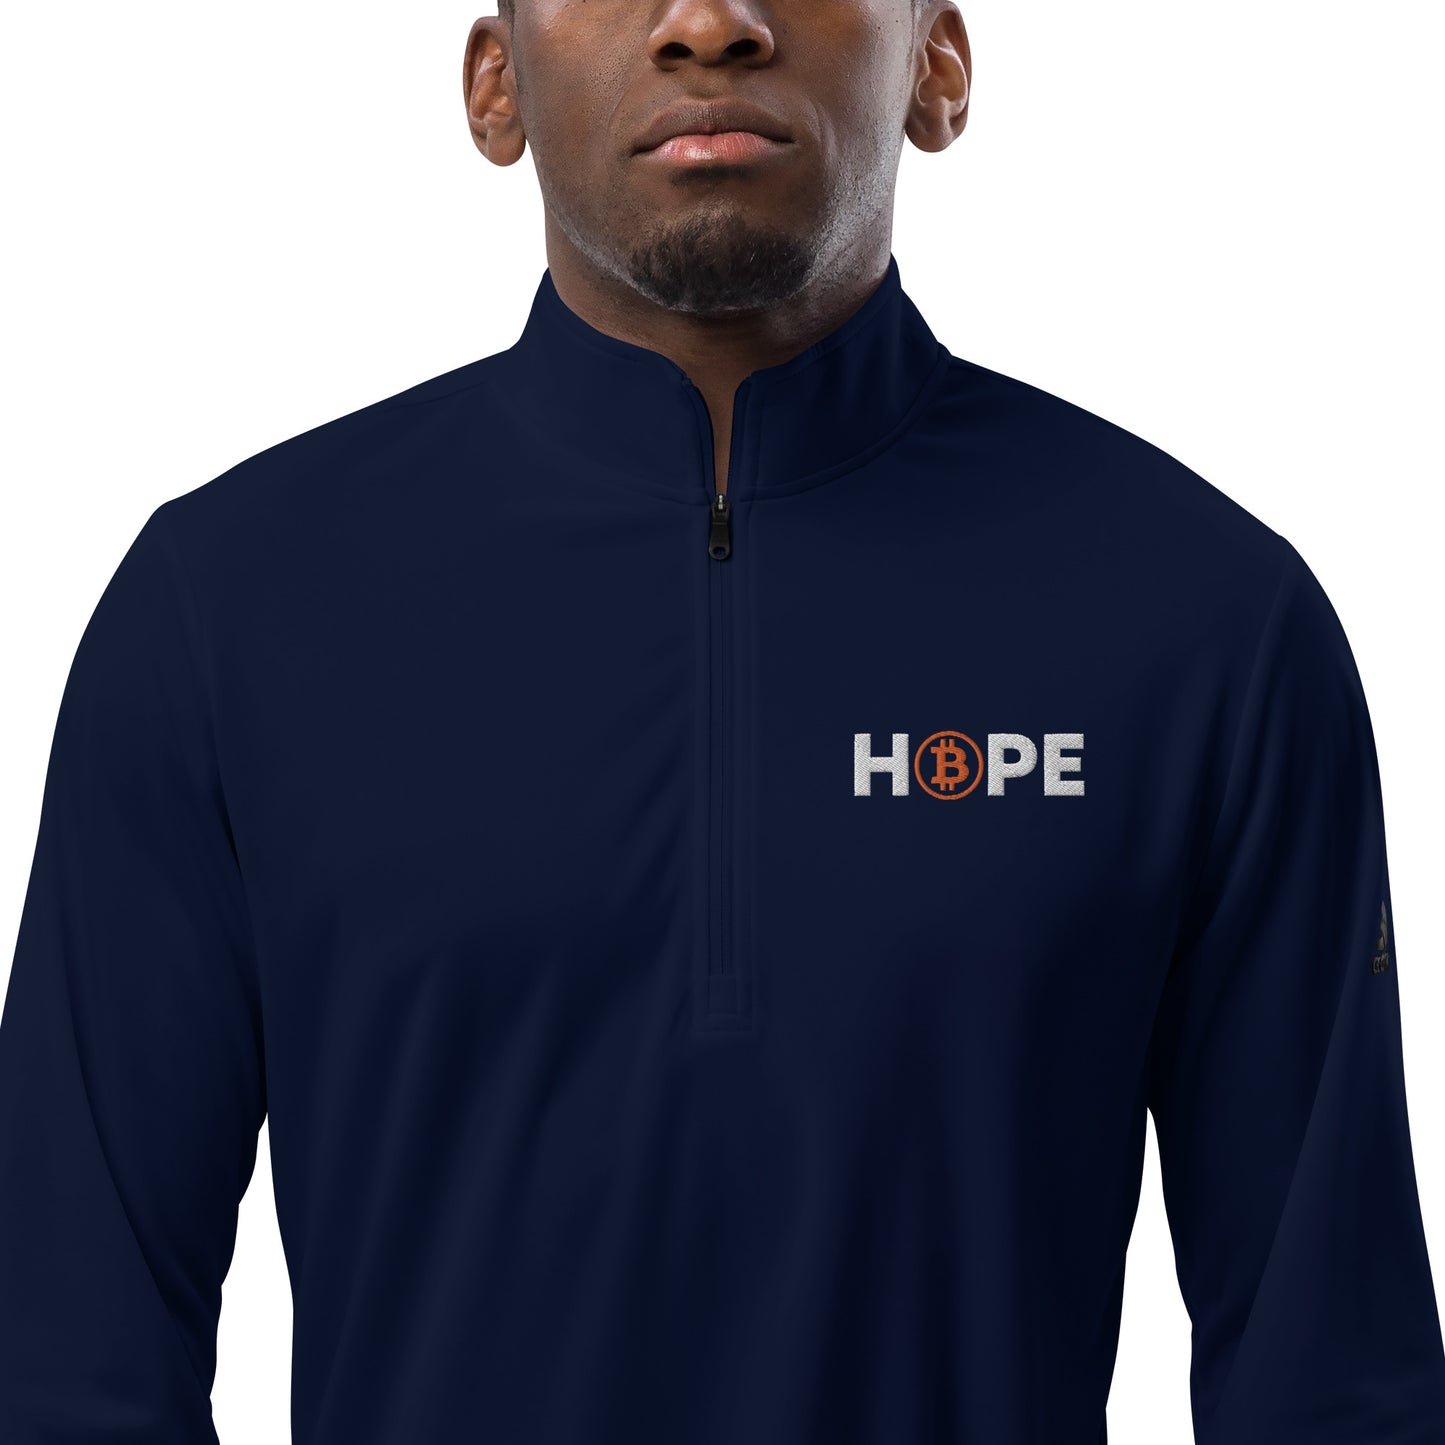 Hope Quarter zip pullover